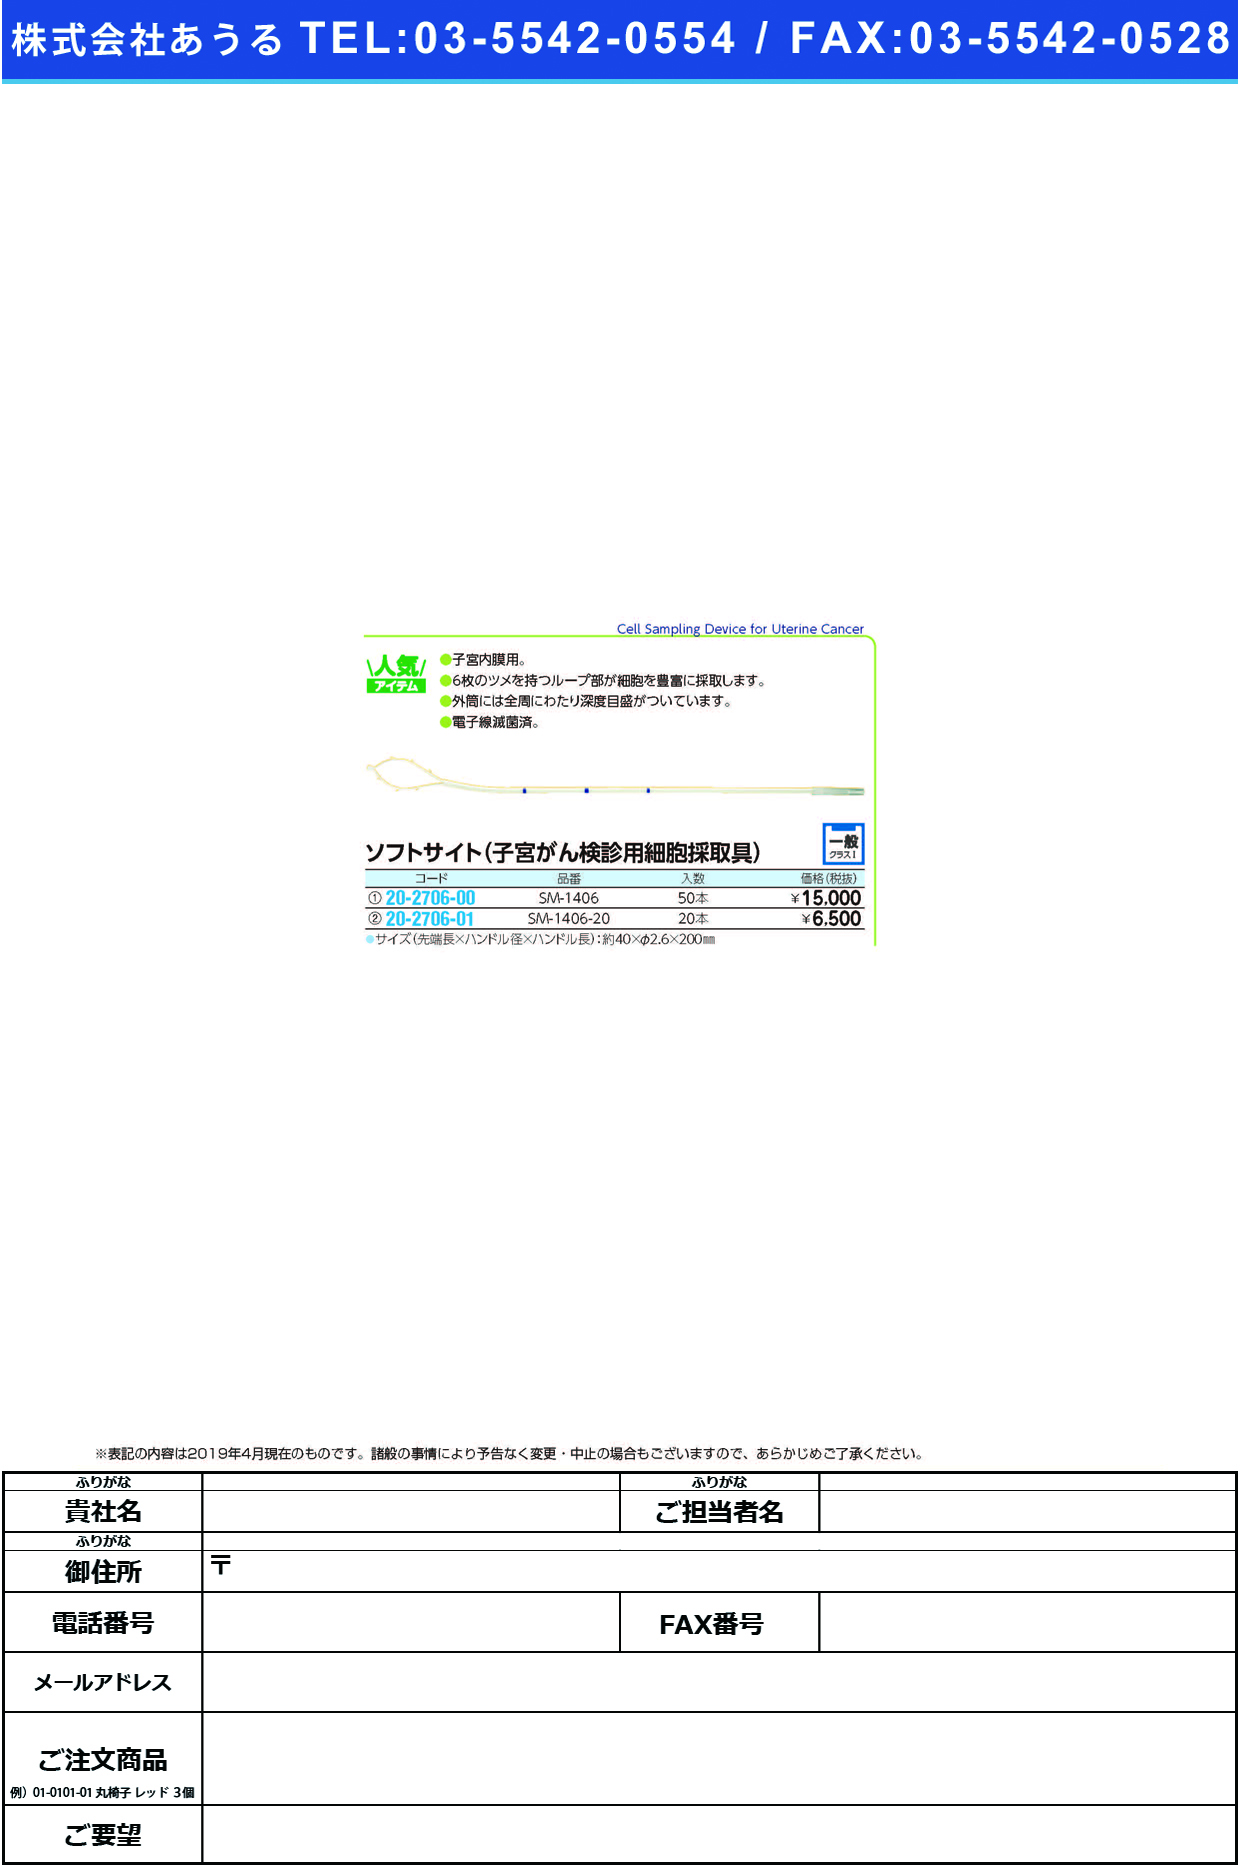 (20-2706-00)ソフトサイト SM-1406(50ﾎﾟﾝｲﾘ) ｿﾌﾄｻｲﾄ(ソフトメディカル)【1箱単位】【2019年カタログ商品】